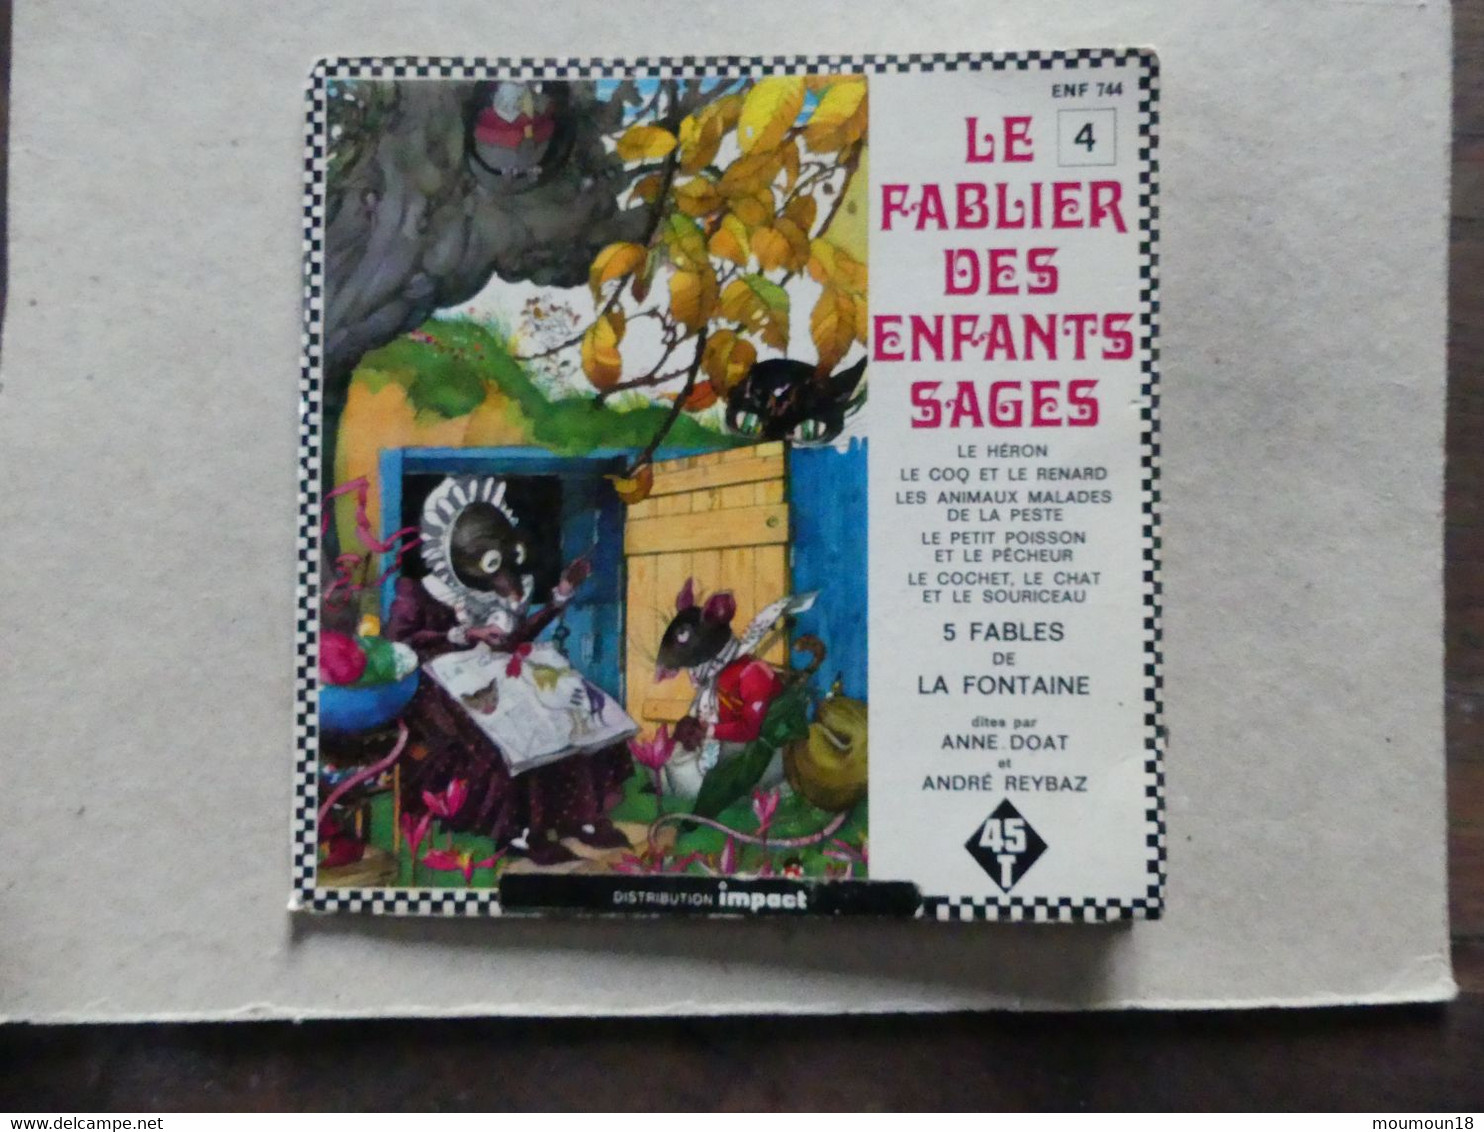 45 T Le Fablier Des Enfants Sages N° 4 ENF744 Impadt - 45 T - Maxi-Single